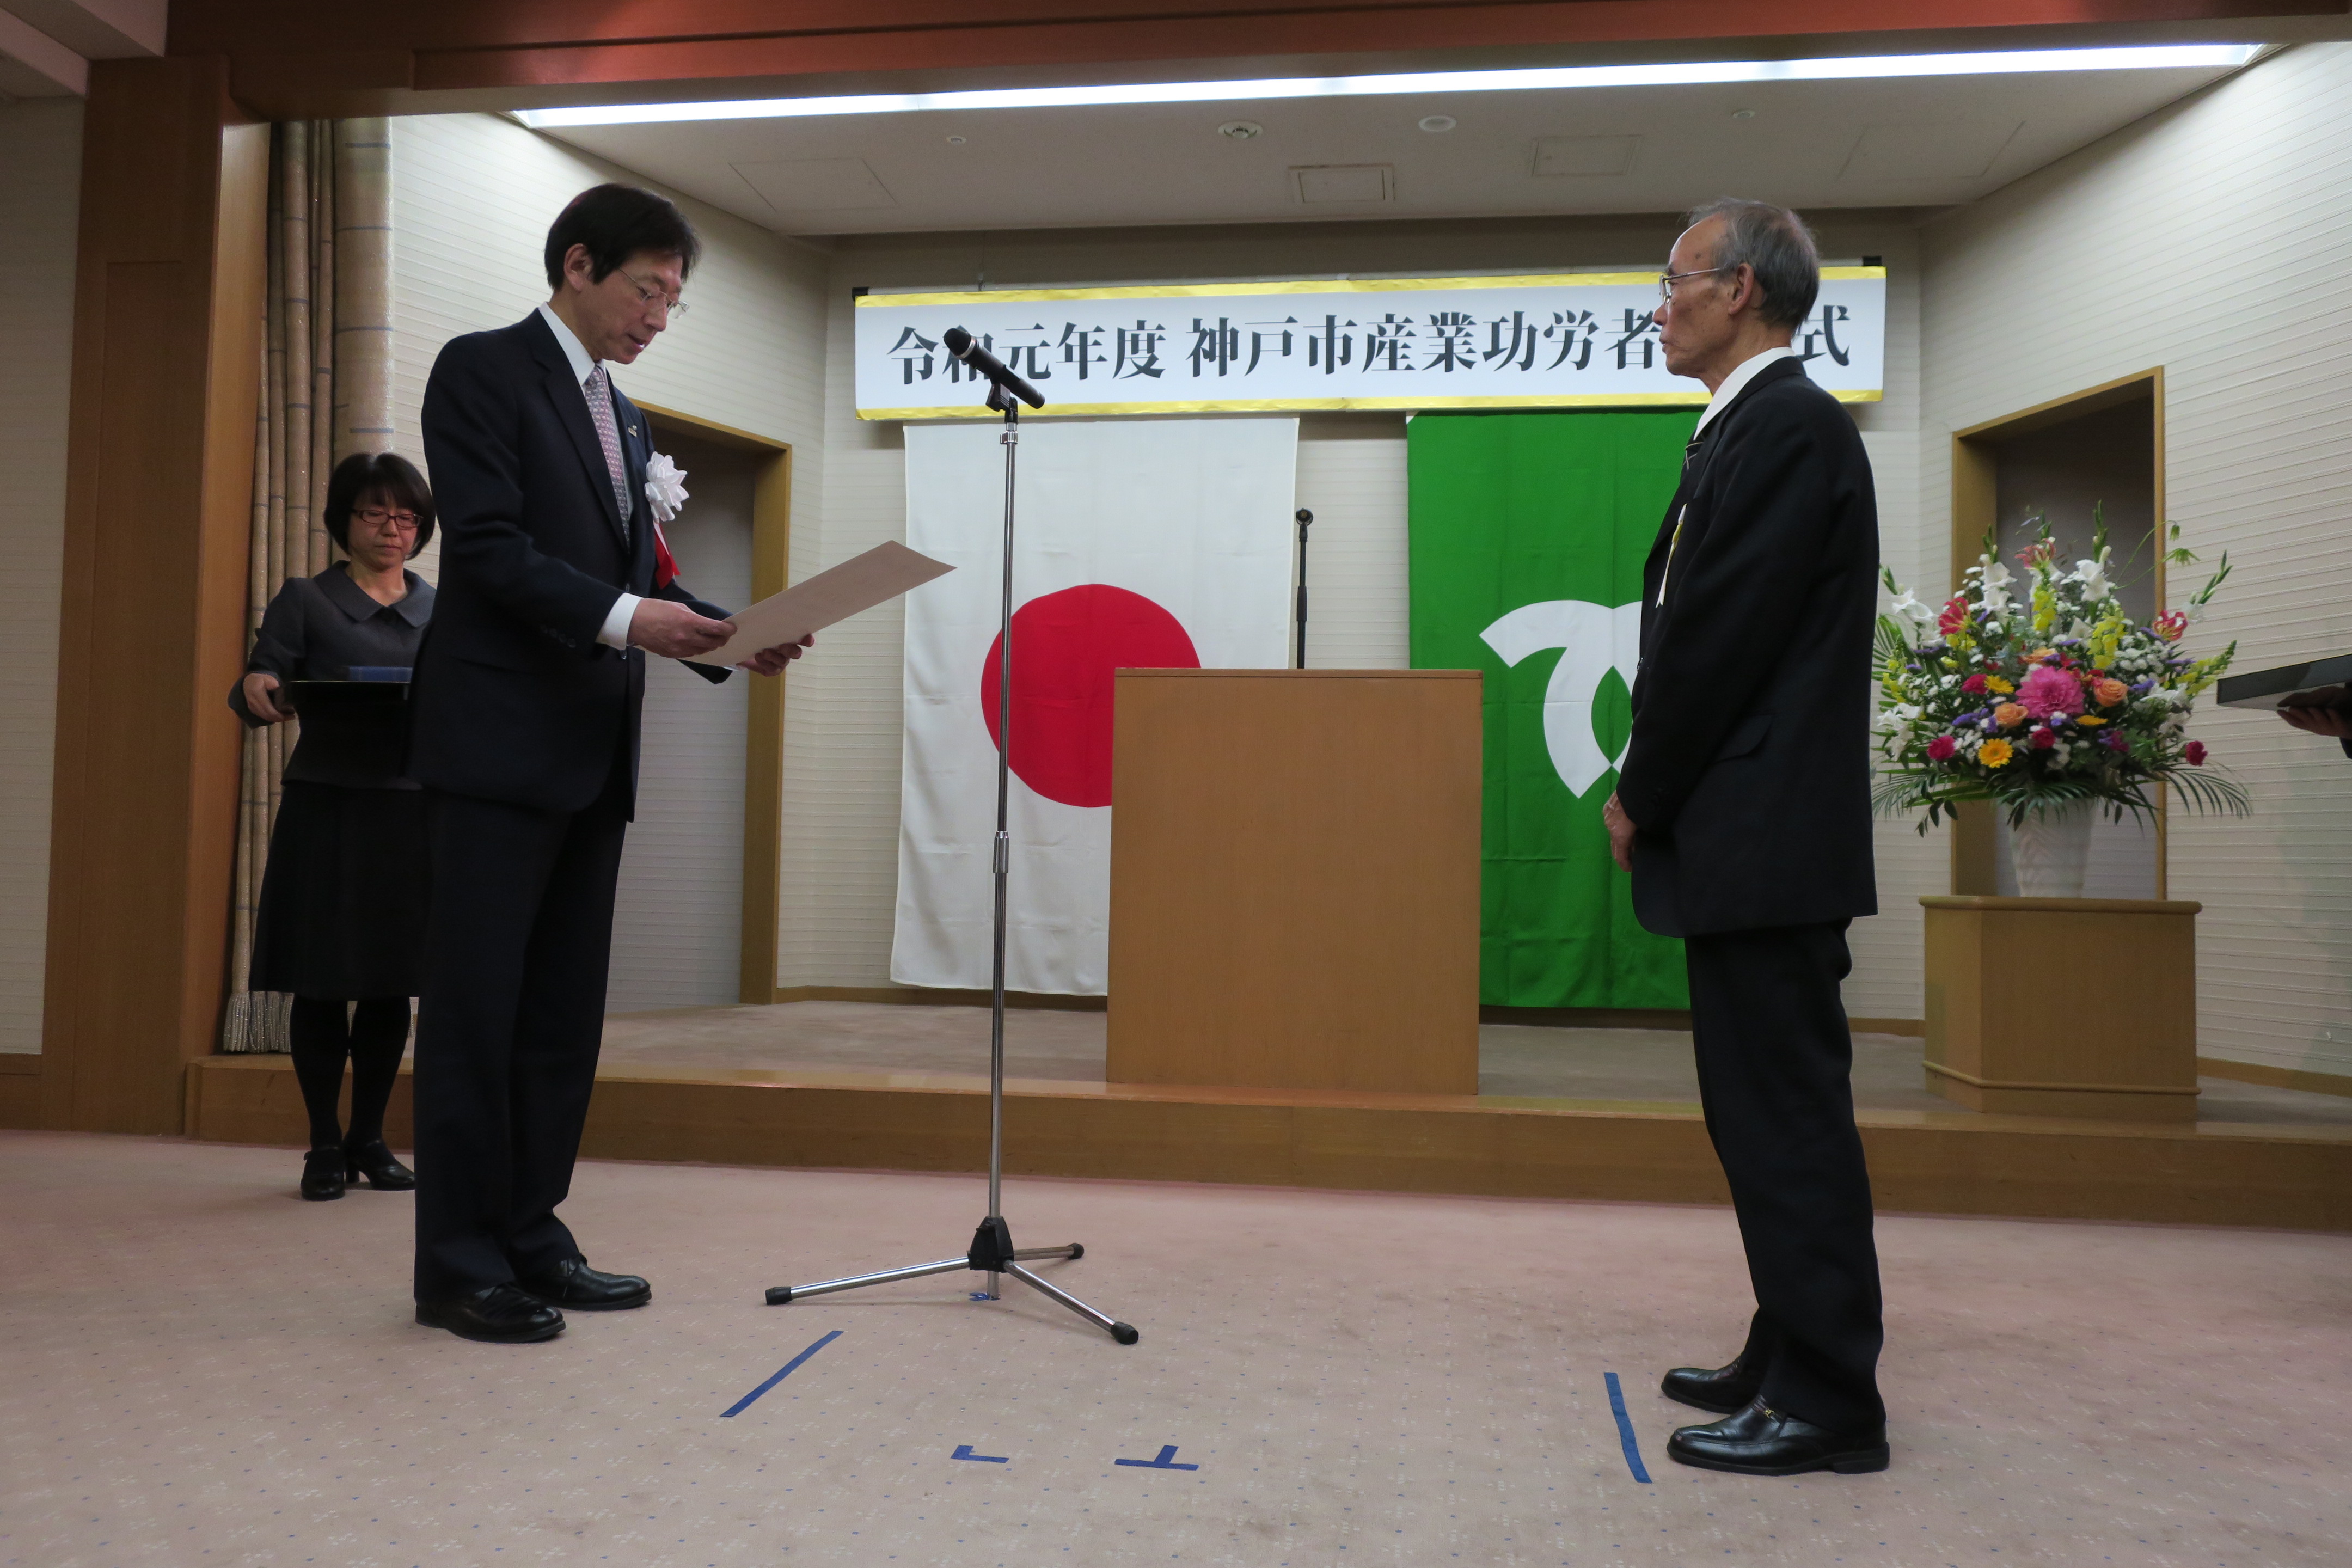 神戸市功労者従業員表彰を開催しました